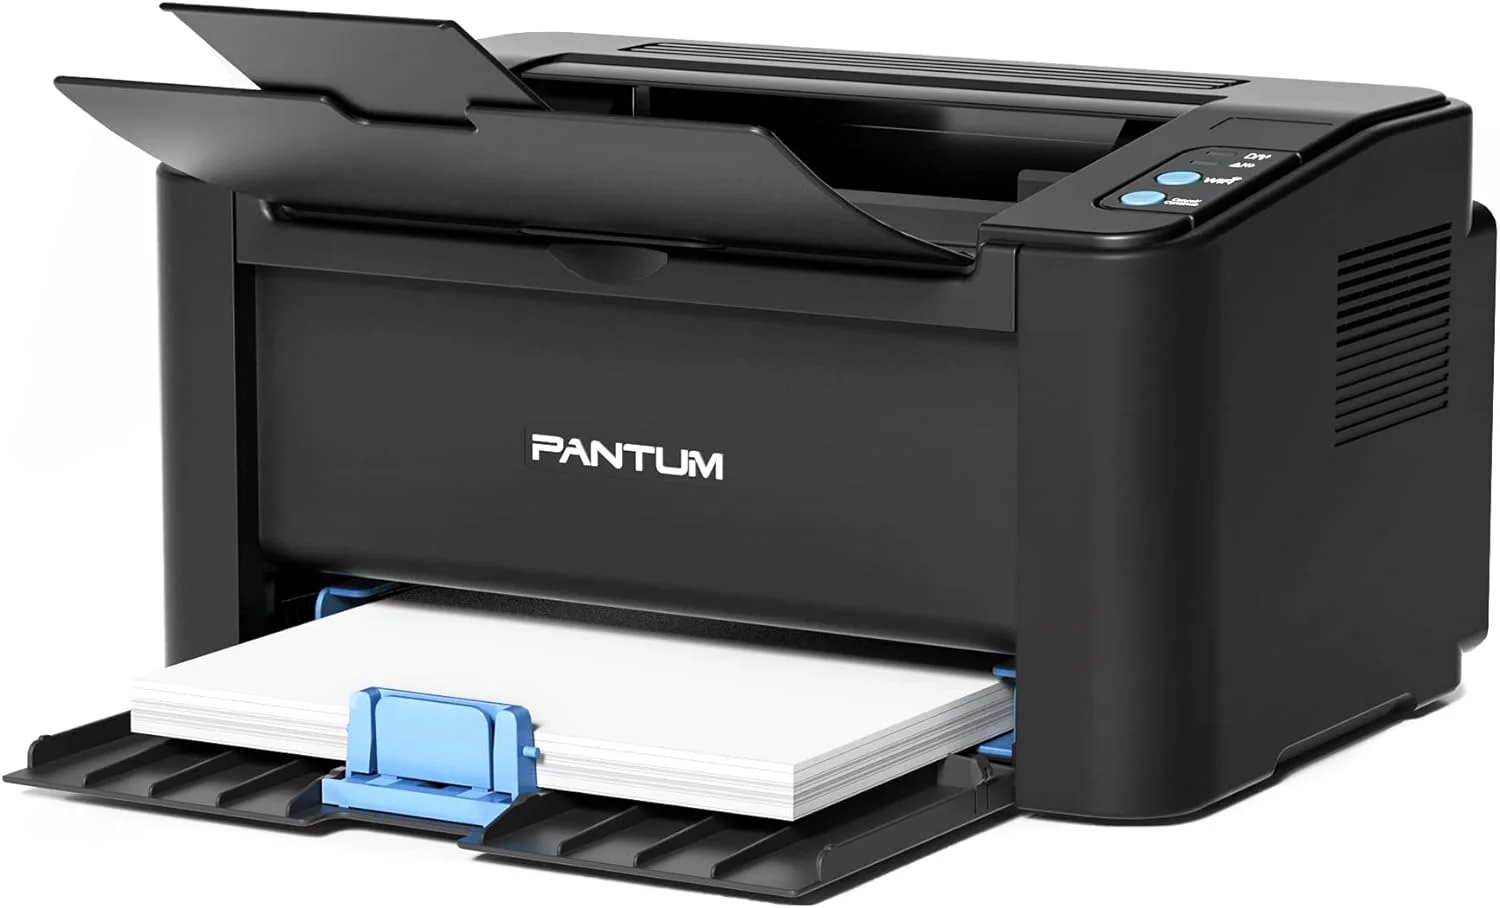 Pantum P2502W Review